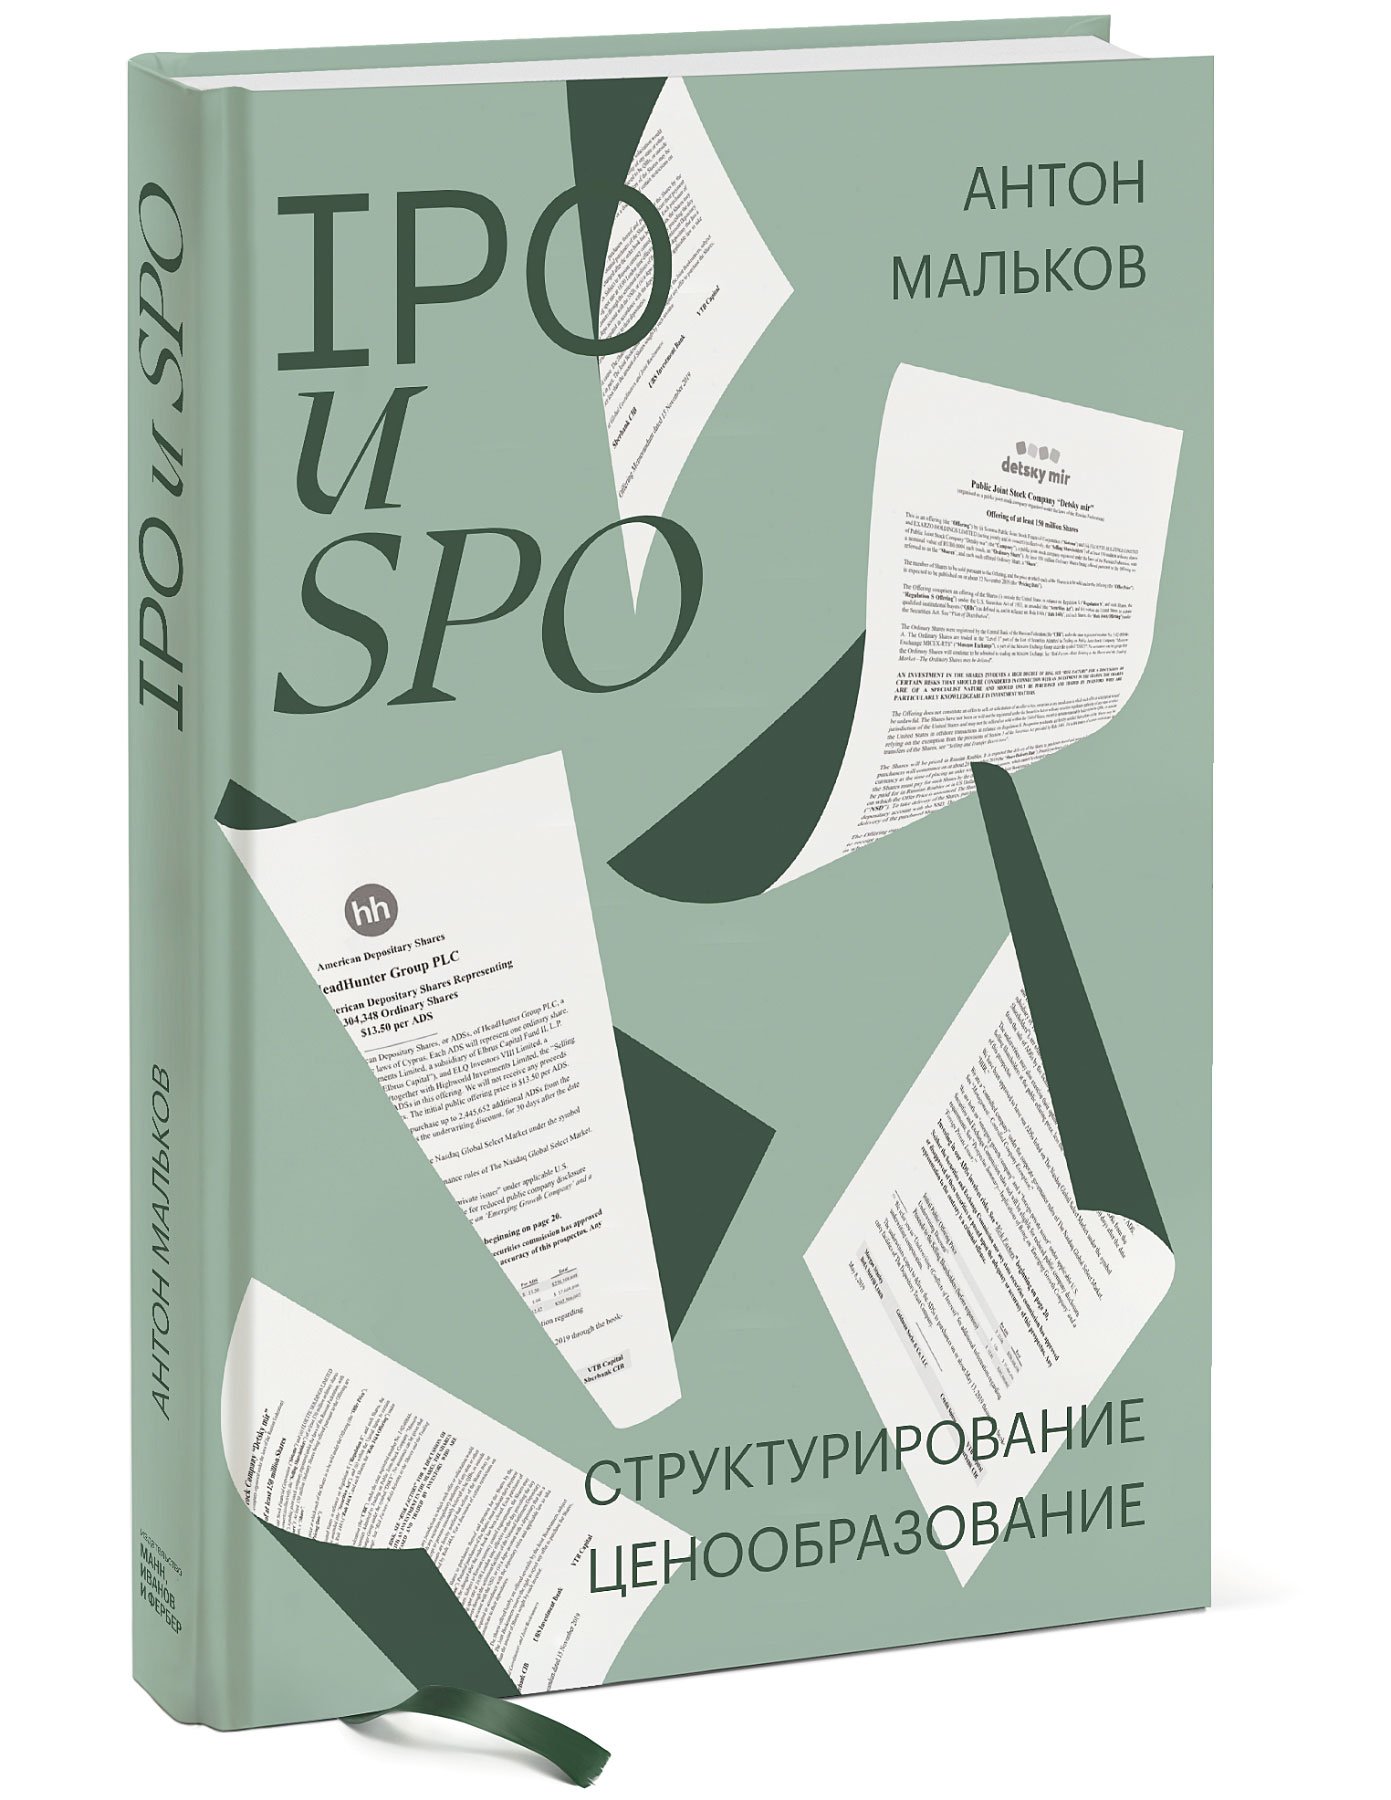 IPO и SPO. Структурирование, ценообразование Антон Мальков